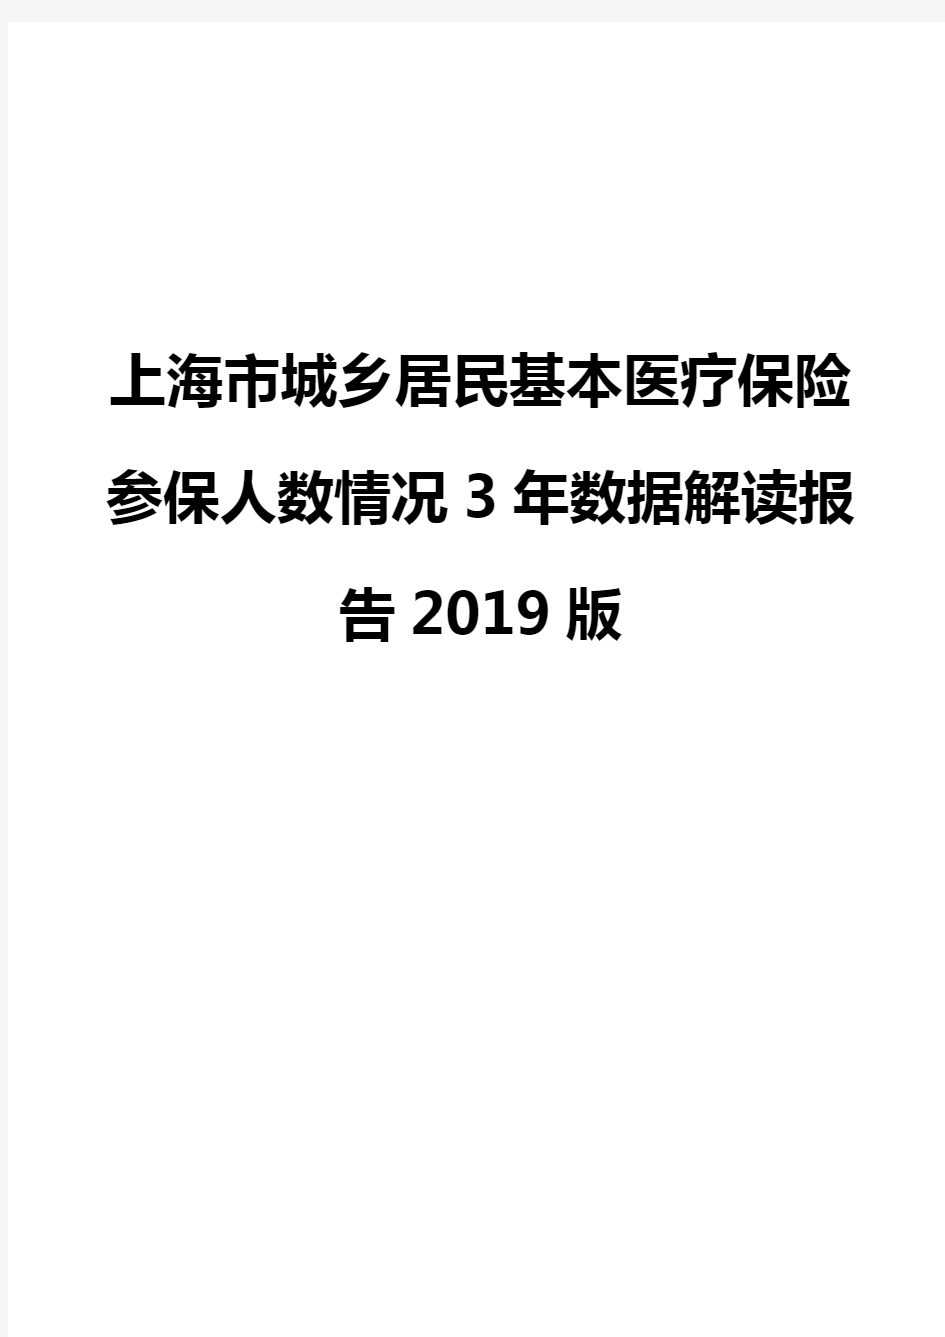 上海市城乡居民基本医疗保险参保人数情况3年数据解读报告2019版